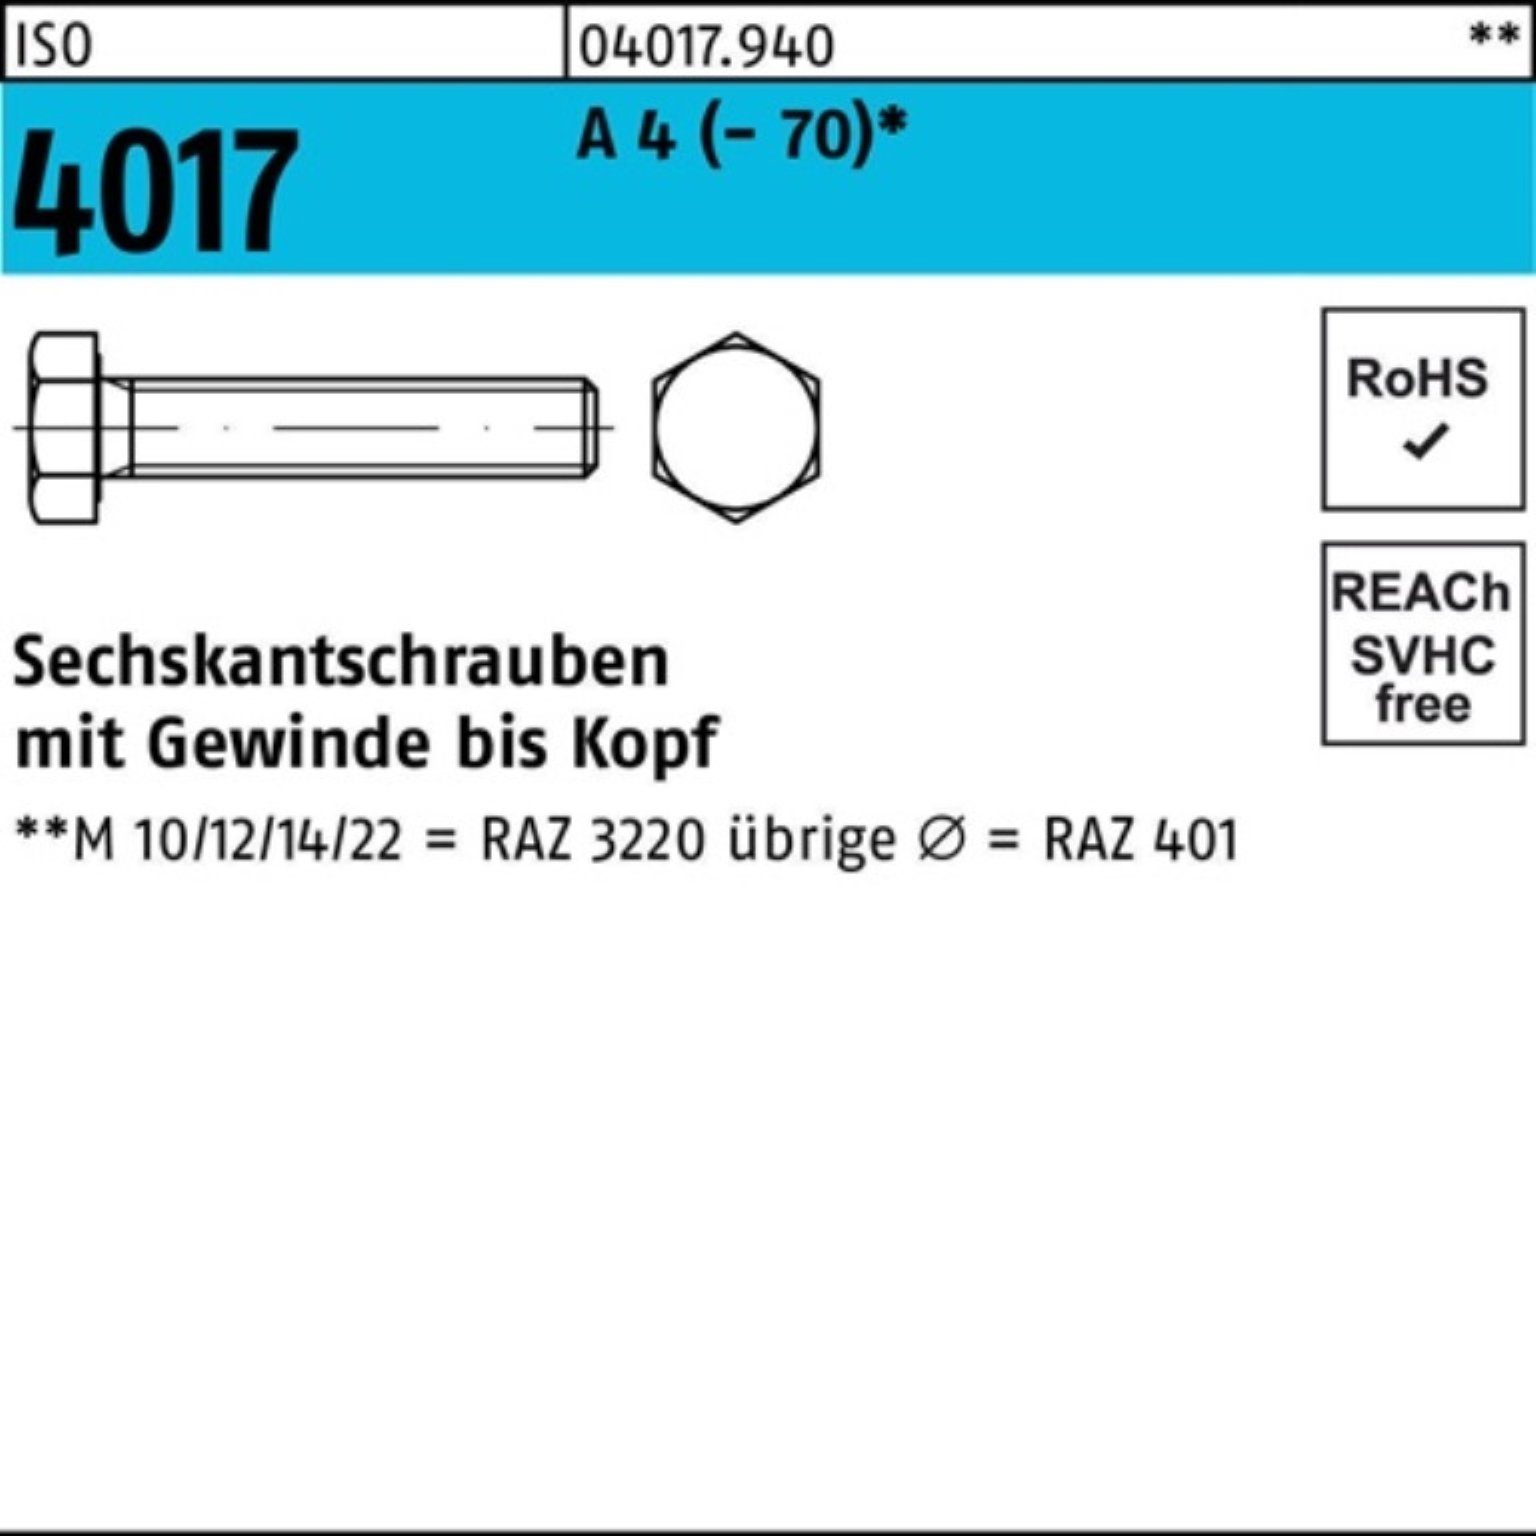 Bufab Sechskantschraube 100er 4017 (70) 4 VG M27x Pack Sechskantschraube Stück A 50 1 ISO I